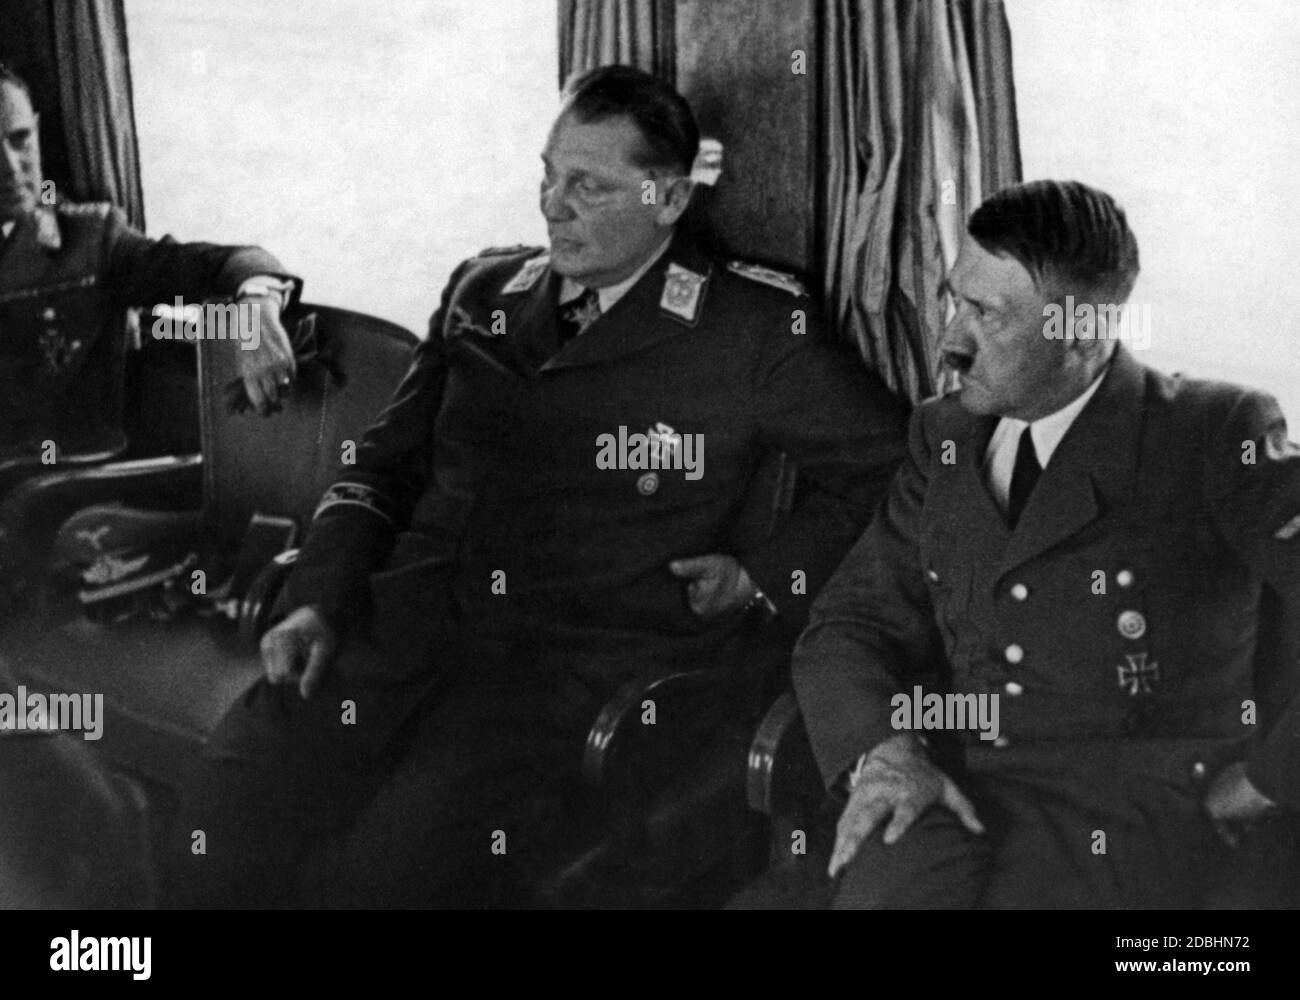 Adolf Hitler avec Hermann Goering et Karl Bodenschatz dans un train spécial pendant la campagne en Pologne. Banque D'Images